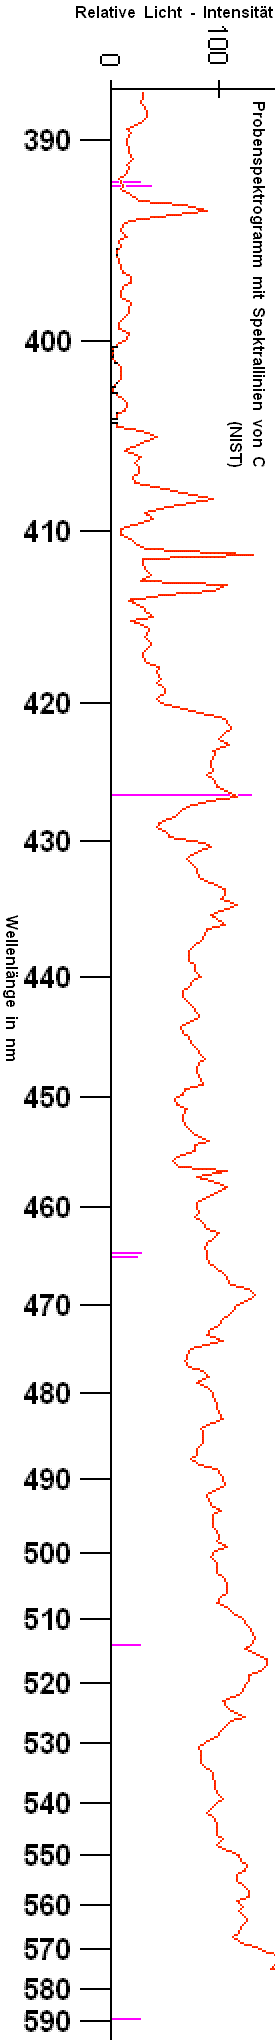 Spektrogramm der Analysenprobe mit Spektrallinien von Kohlenstoff